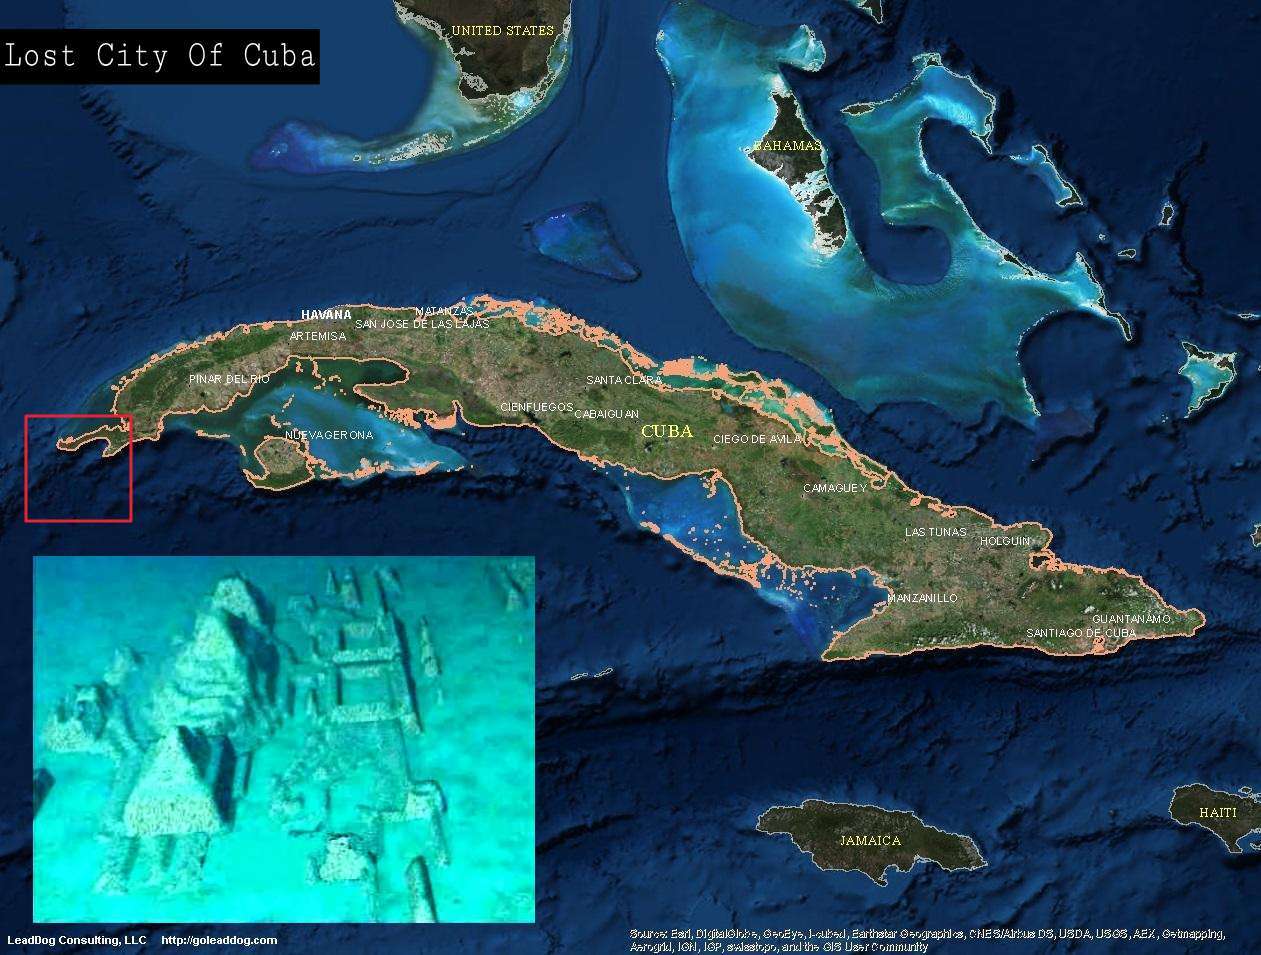 Cuba's undersøiske by